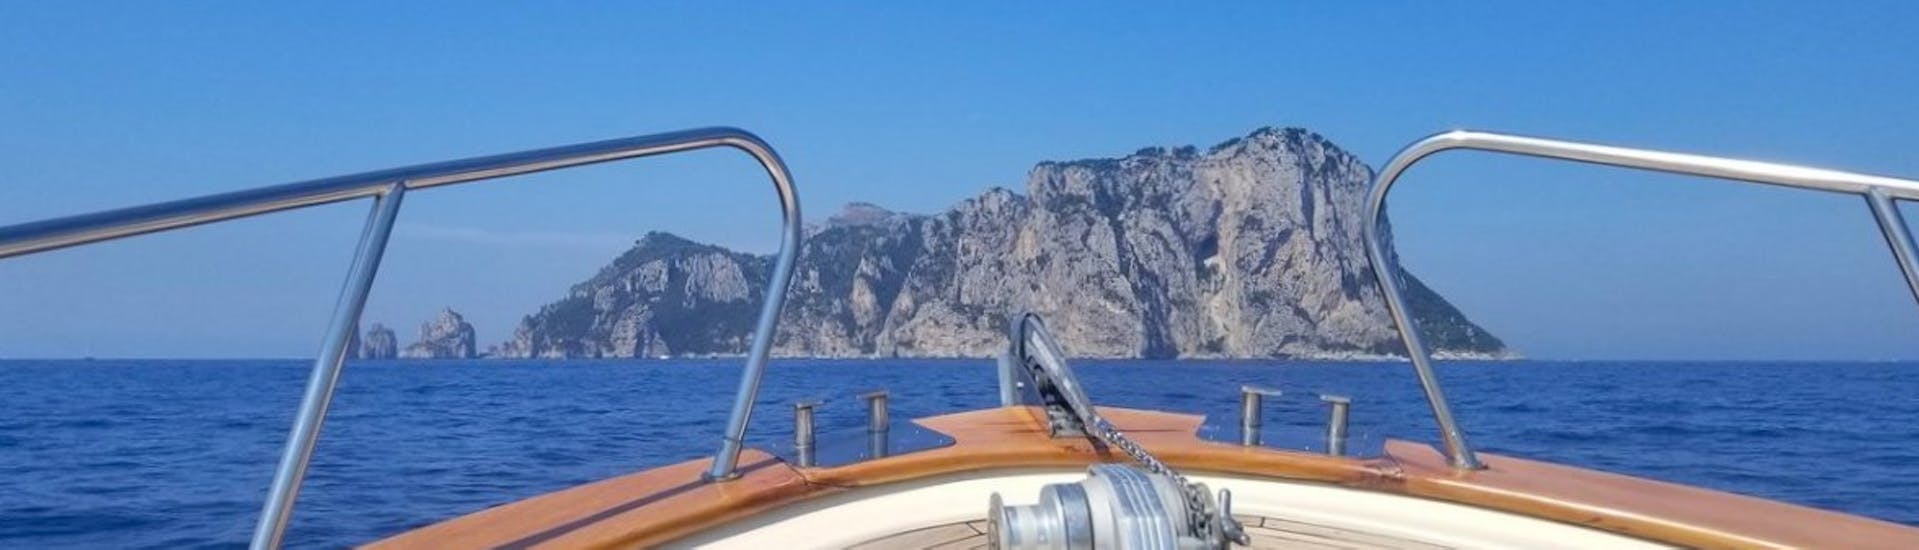 Paseo en barco privado con escalas en Positano y Amalfi.